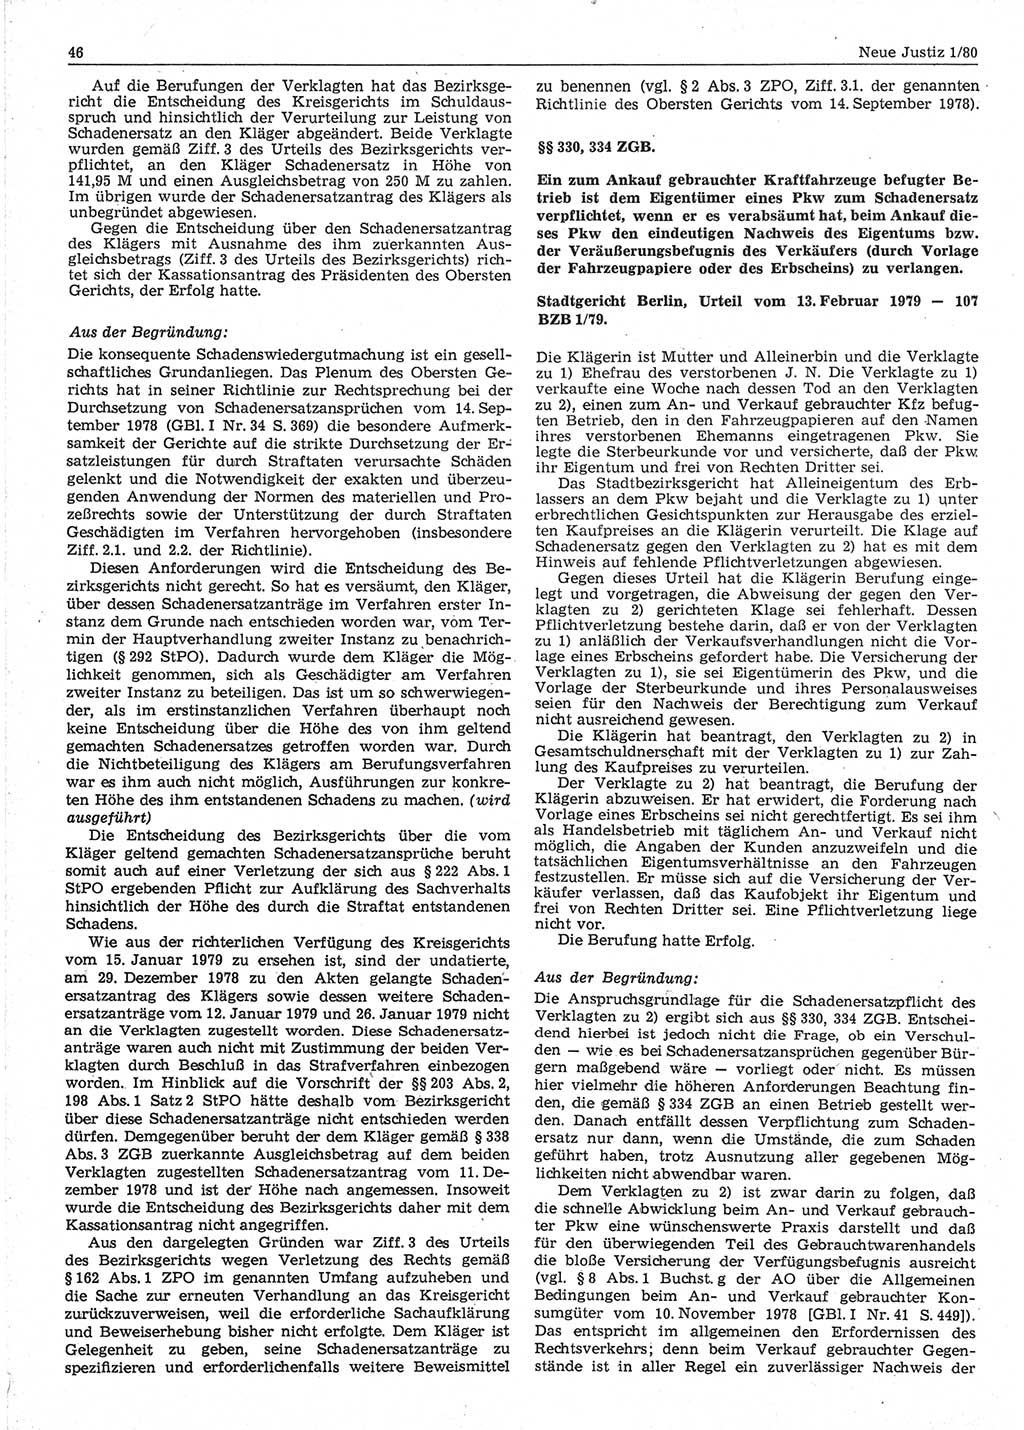 Neue Justiz (NJ), Zeitschrift für sozialistisches Recht und Gesetzlichkeit [Deutsche Demokratische Republik (DDR)], 34. Jahrgang 1980, Seite 46 (NJ DDR 1980, S. 46)